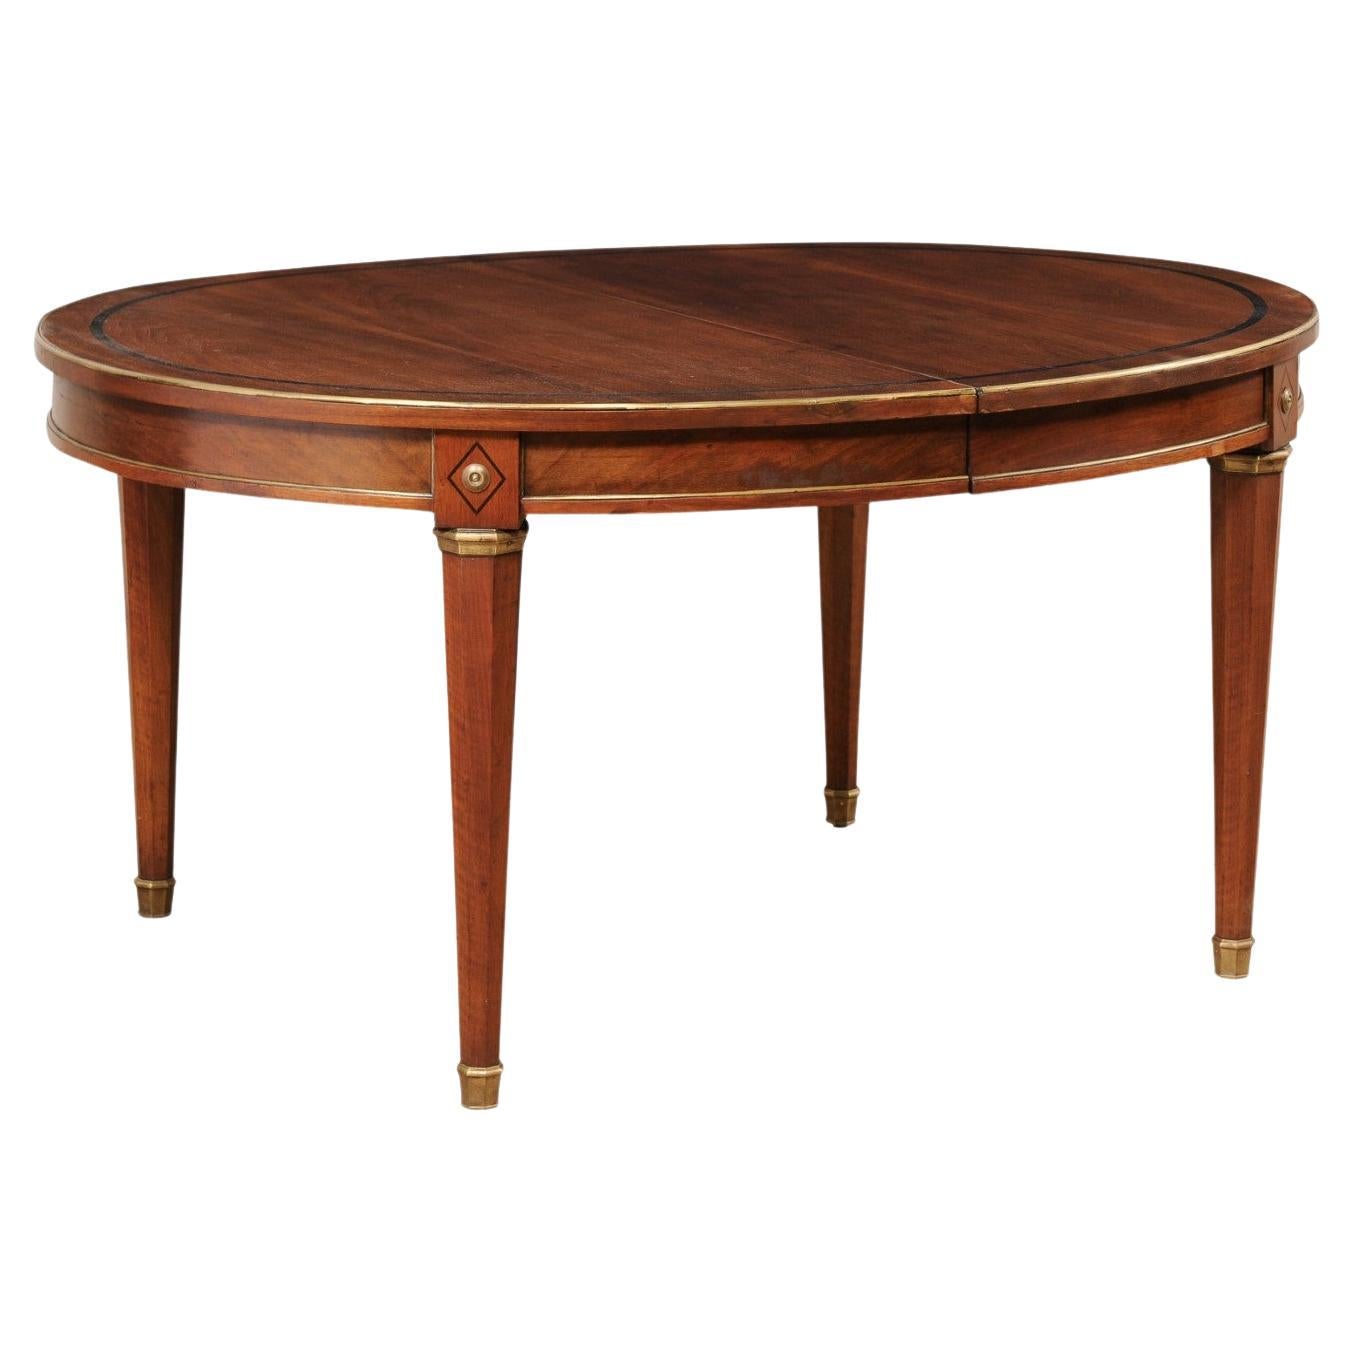 Table ovale de style néoclassique français avec garniture et accents en laiton (1 rallonge en forme de feuille)